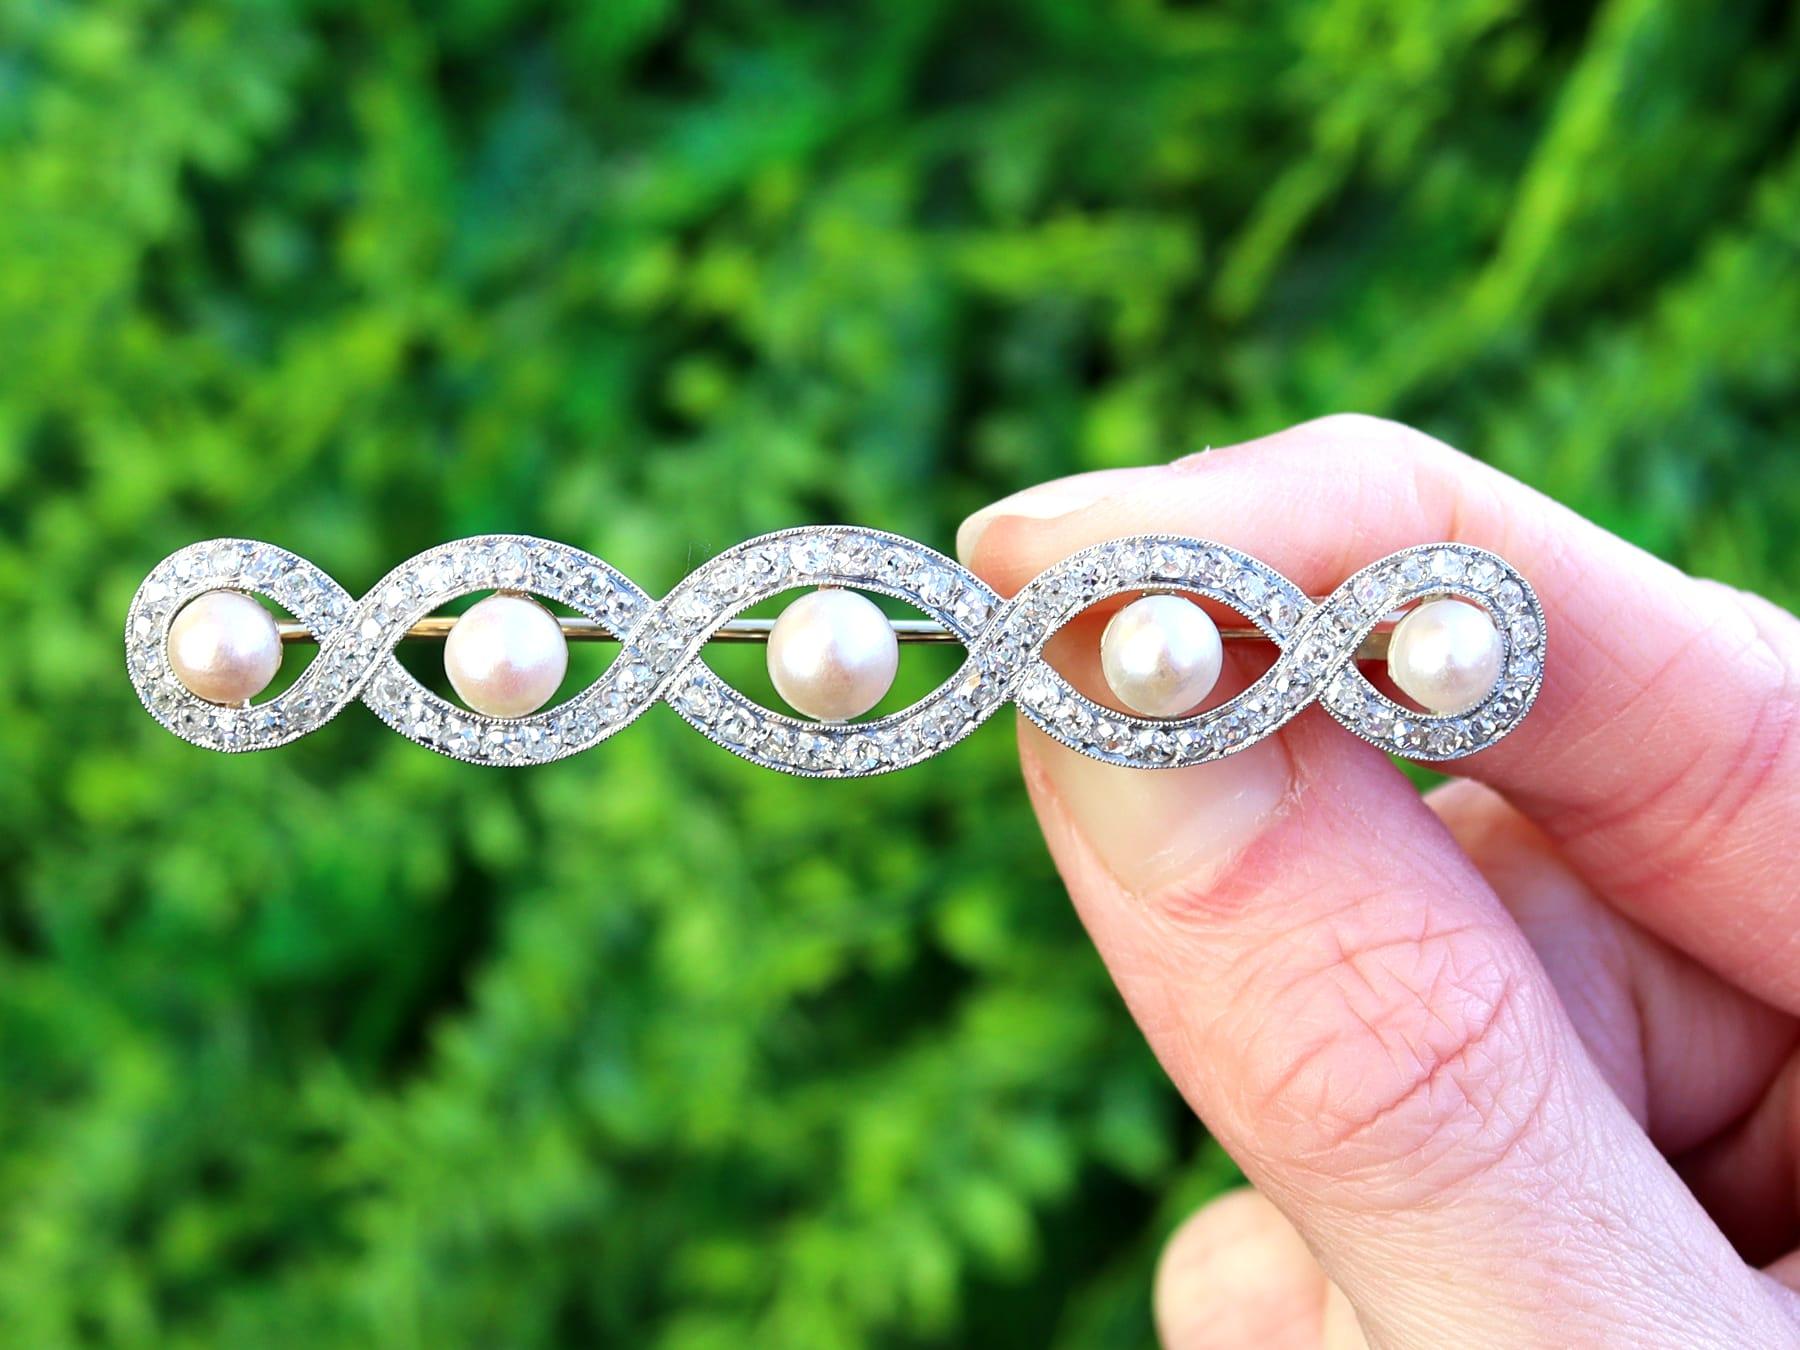 Eine atemberaubende, feine und beeindruckende antike natürliche Perle und 3,10 Karat Diamant, 15k Gelbgold und Platin gesetzt Brosche; Teil unserer antiken Perlenschmuck Sammlungen.

Diese atemberaubende, feine und beeindruckende antike